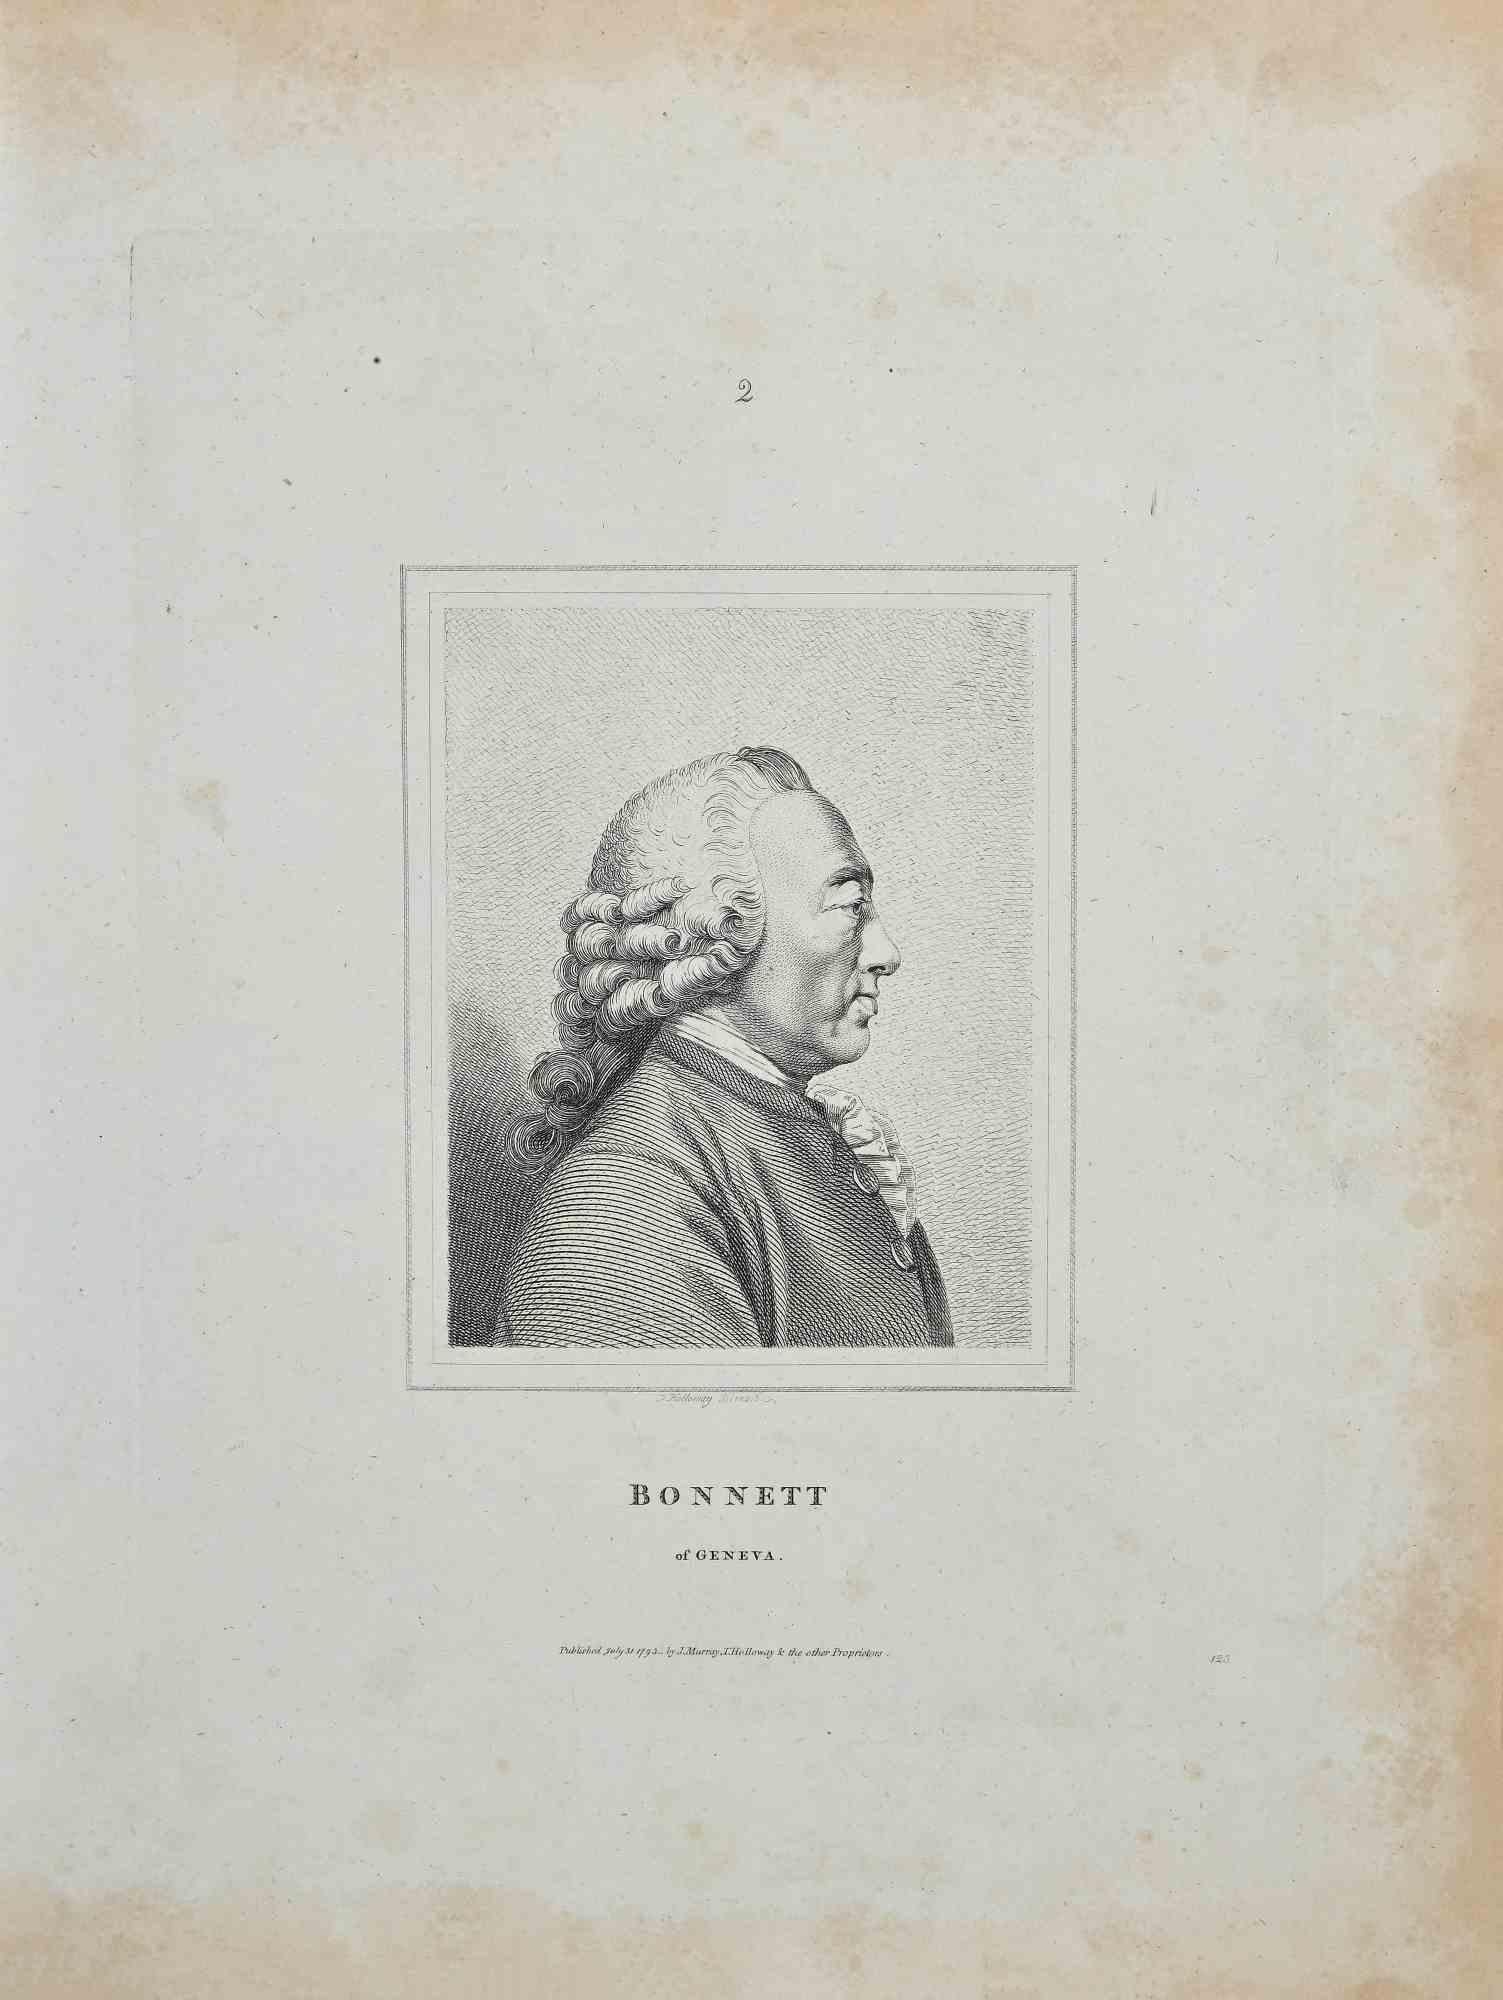 Porträt von Bonnett aus Genf – Original-Radierung von Thomas Holloway – 1810